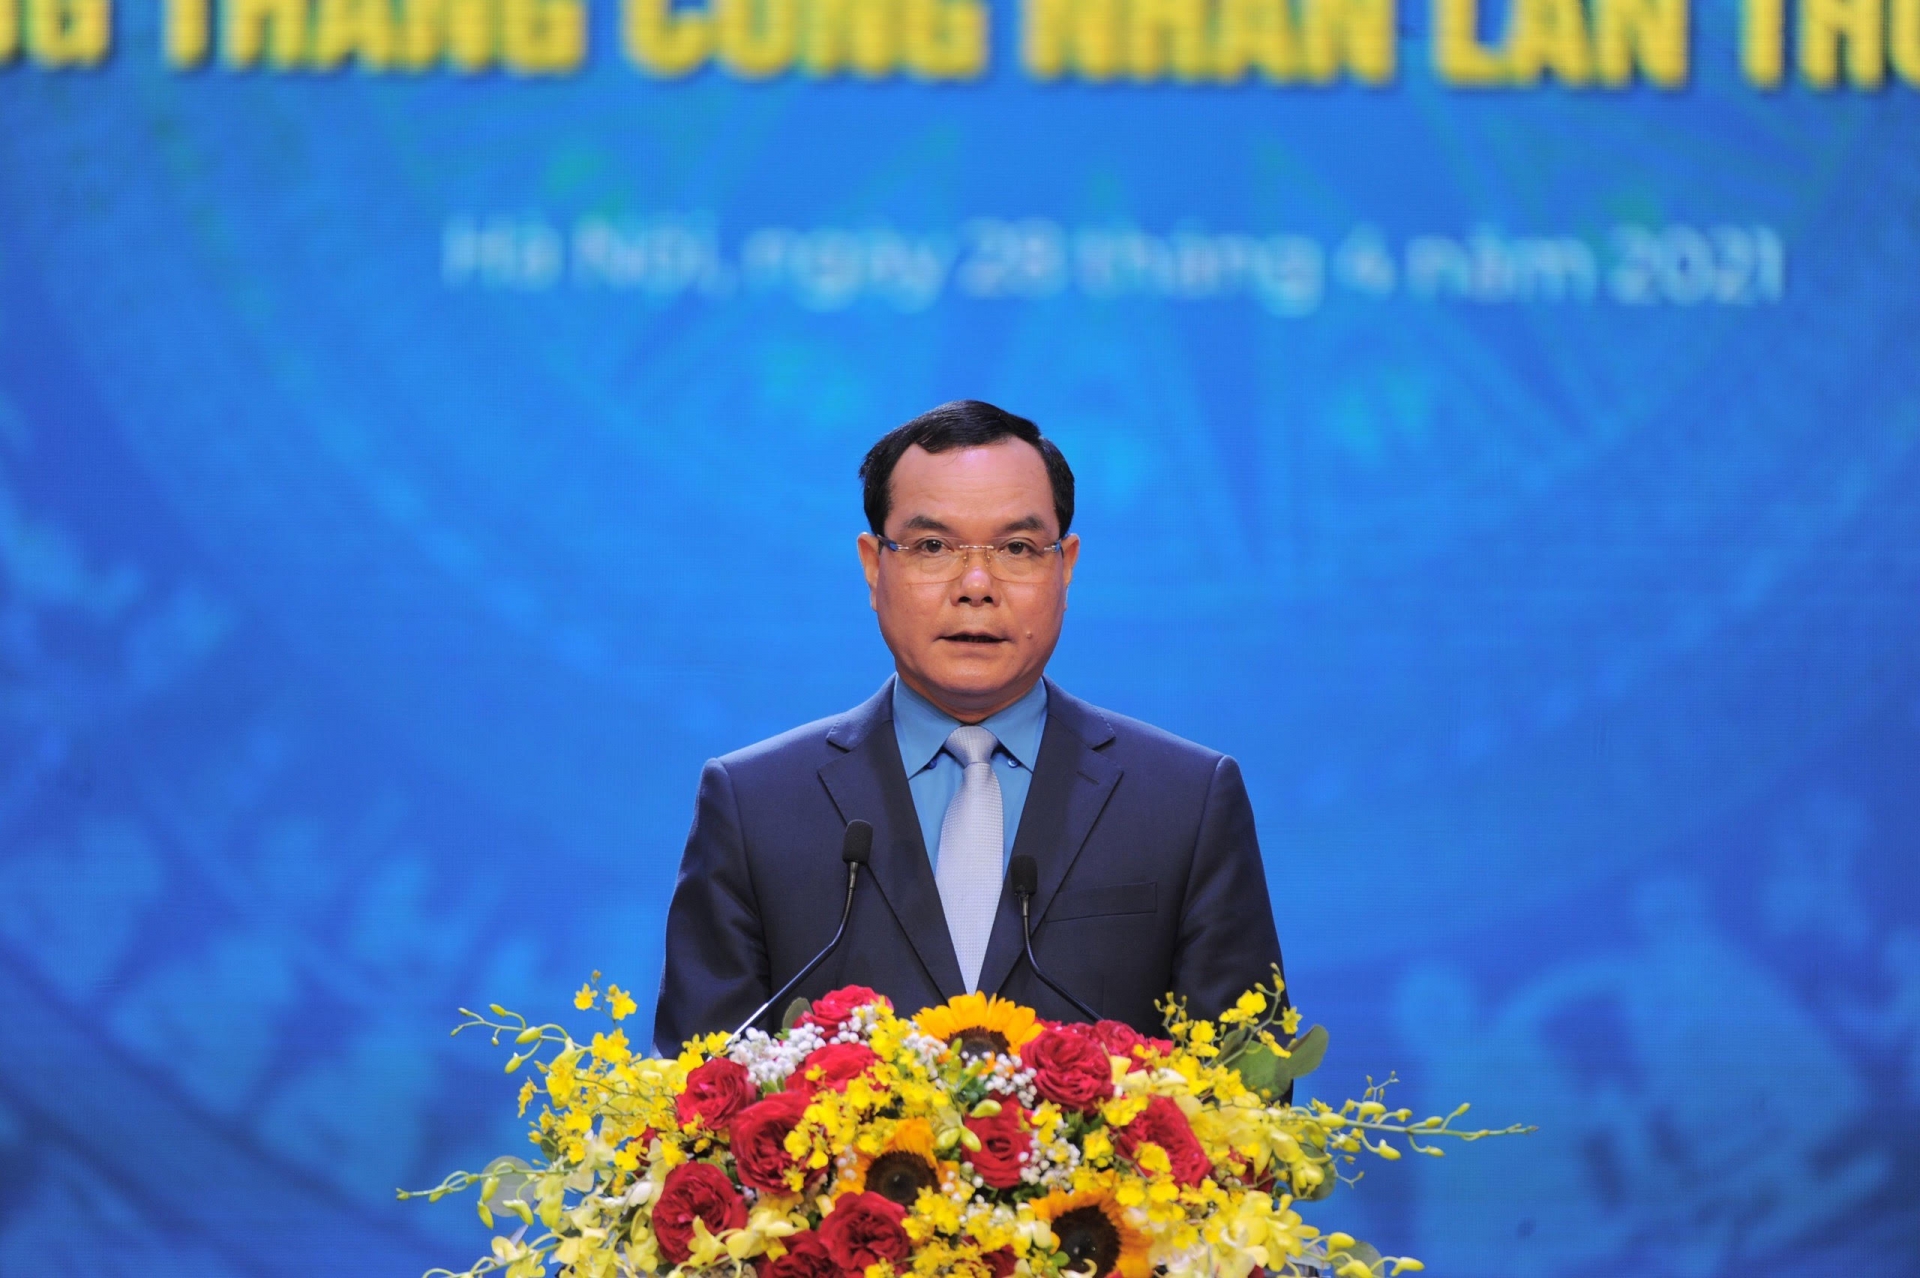 Chủ tịch nước Nguyễn Xuân Phúc tham dự Lễ kỷ niệm 135 năm Ngày Quốc tế Lao động